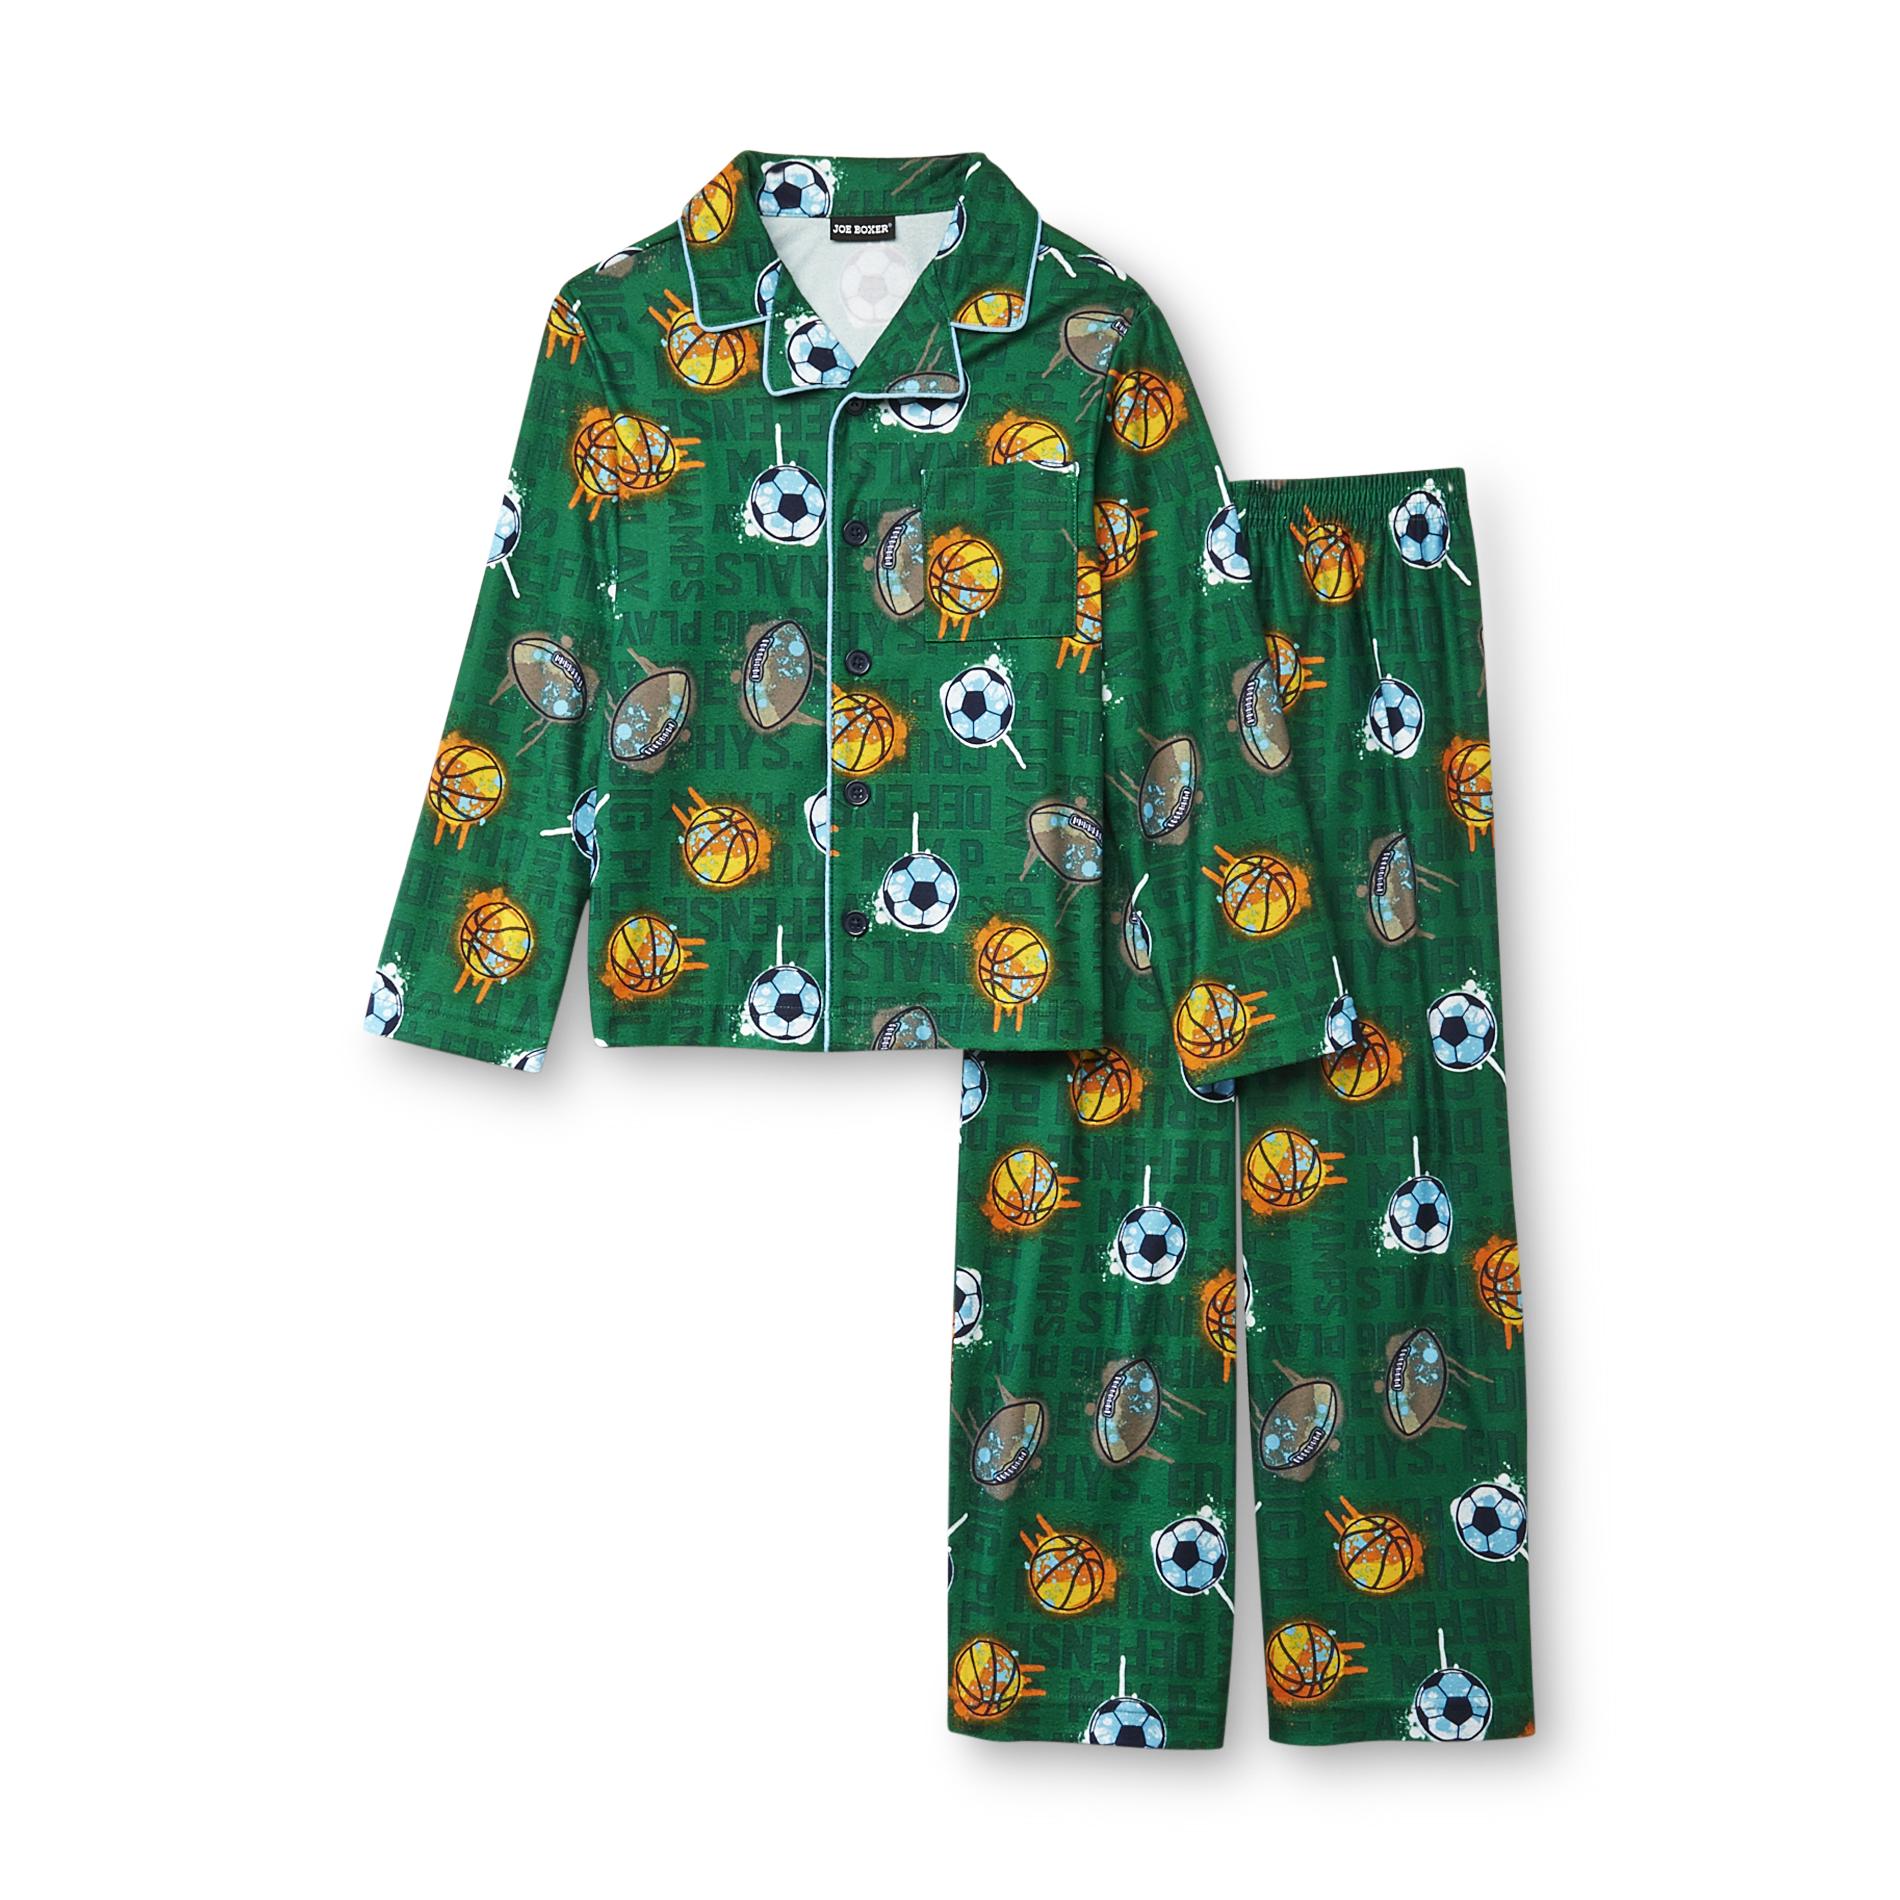 Joe Boxer Boy's Flannel Pajamas - Sports